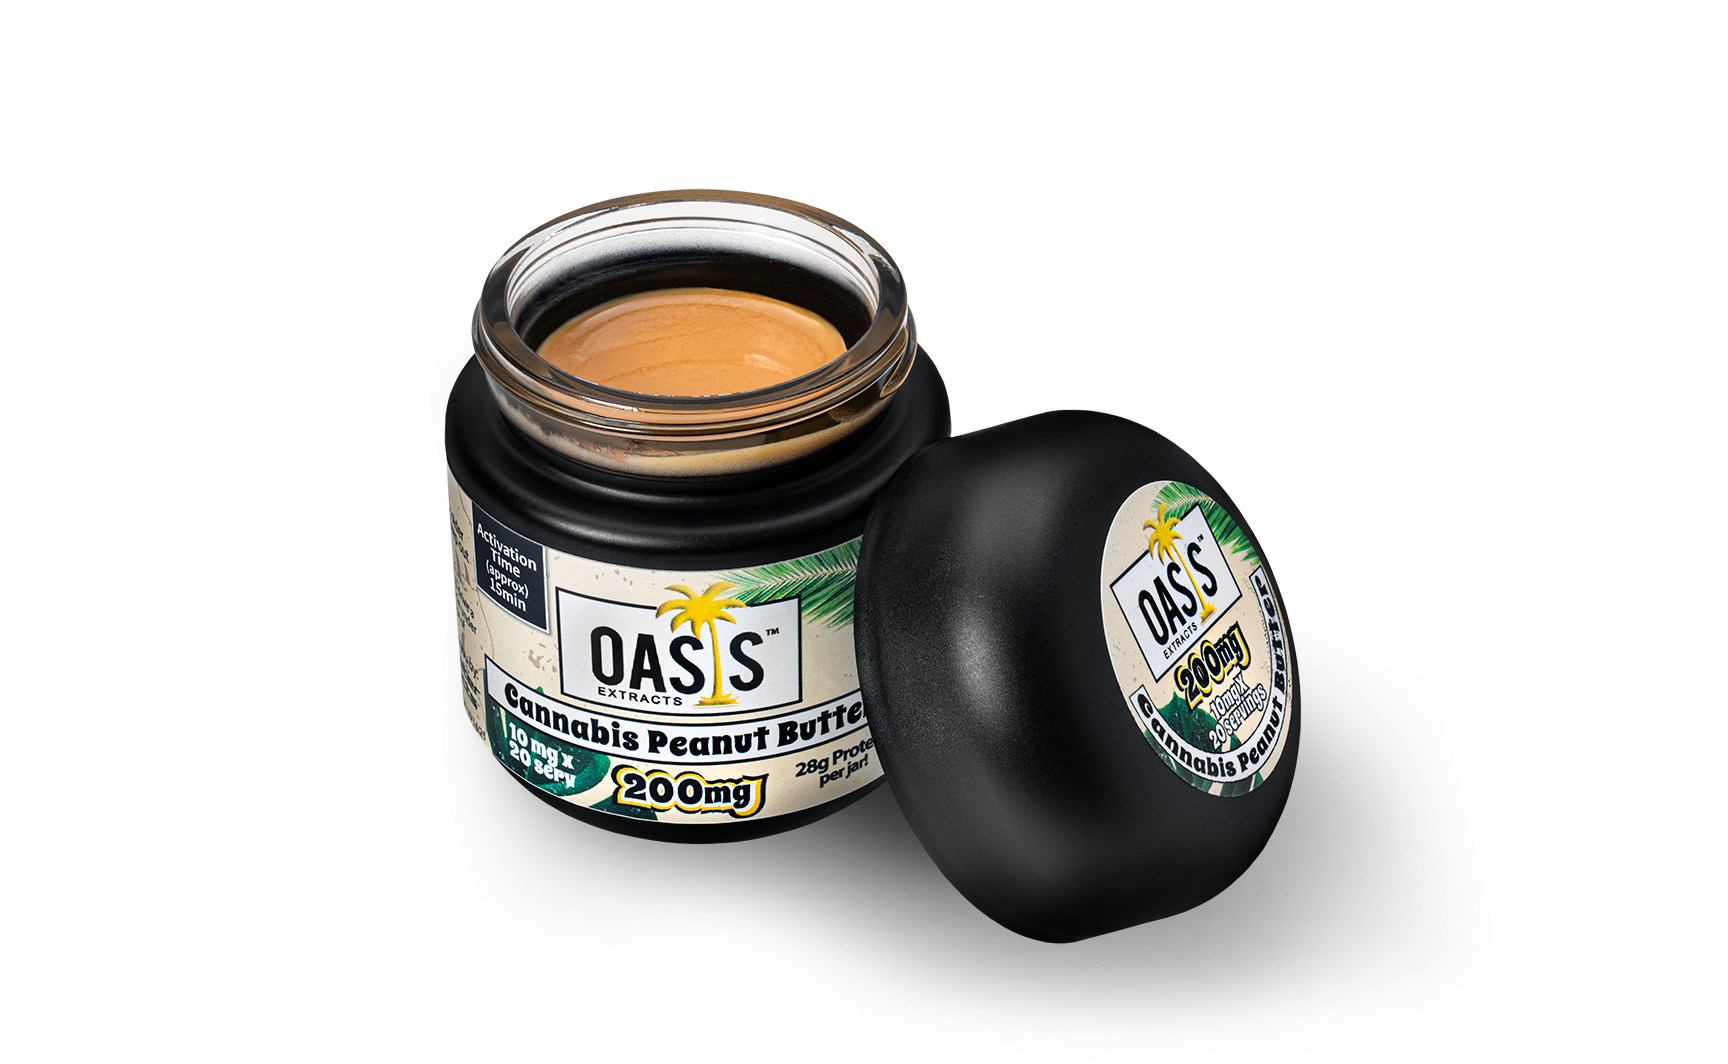 Oasis Peanut Butter